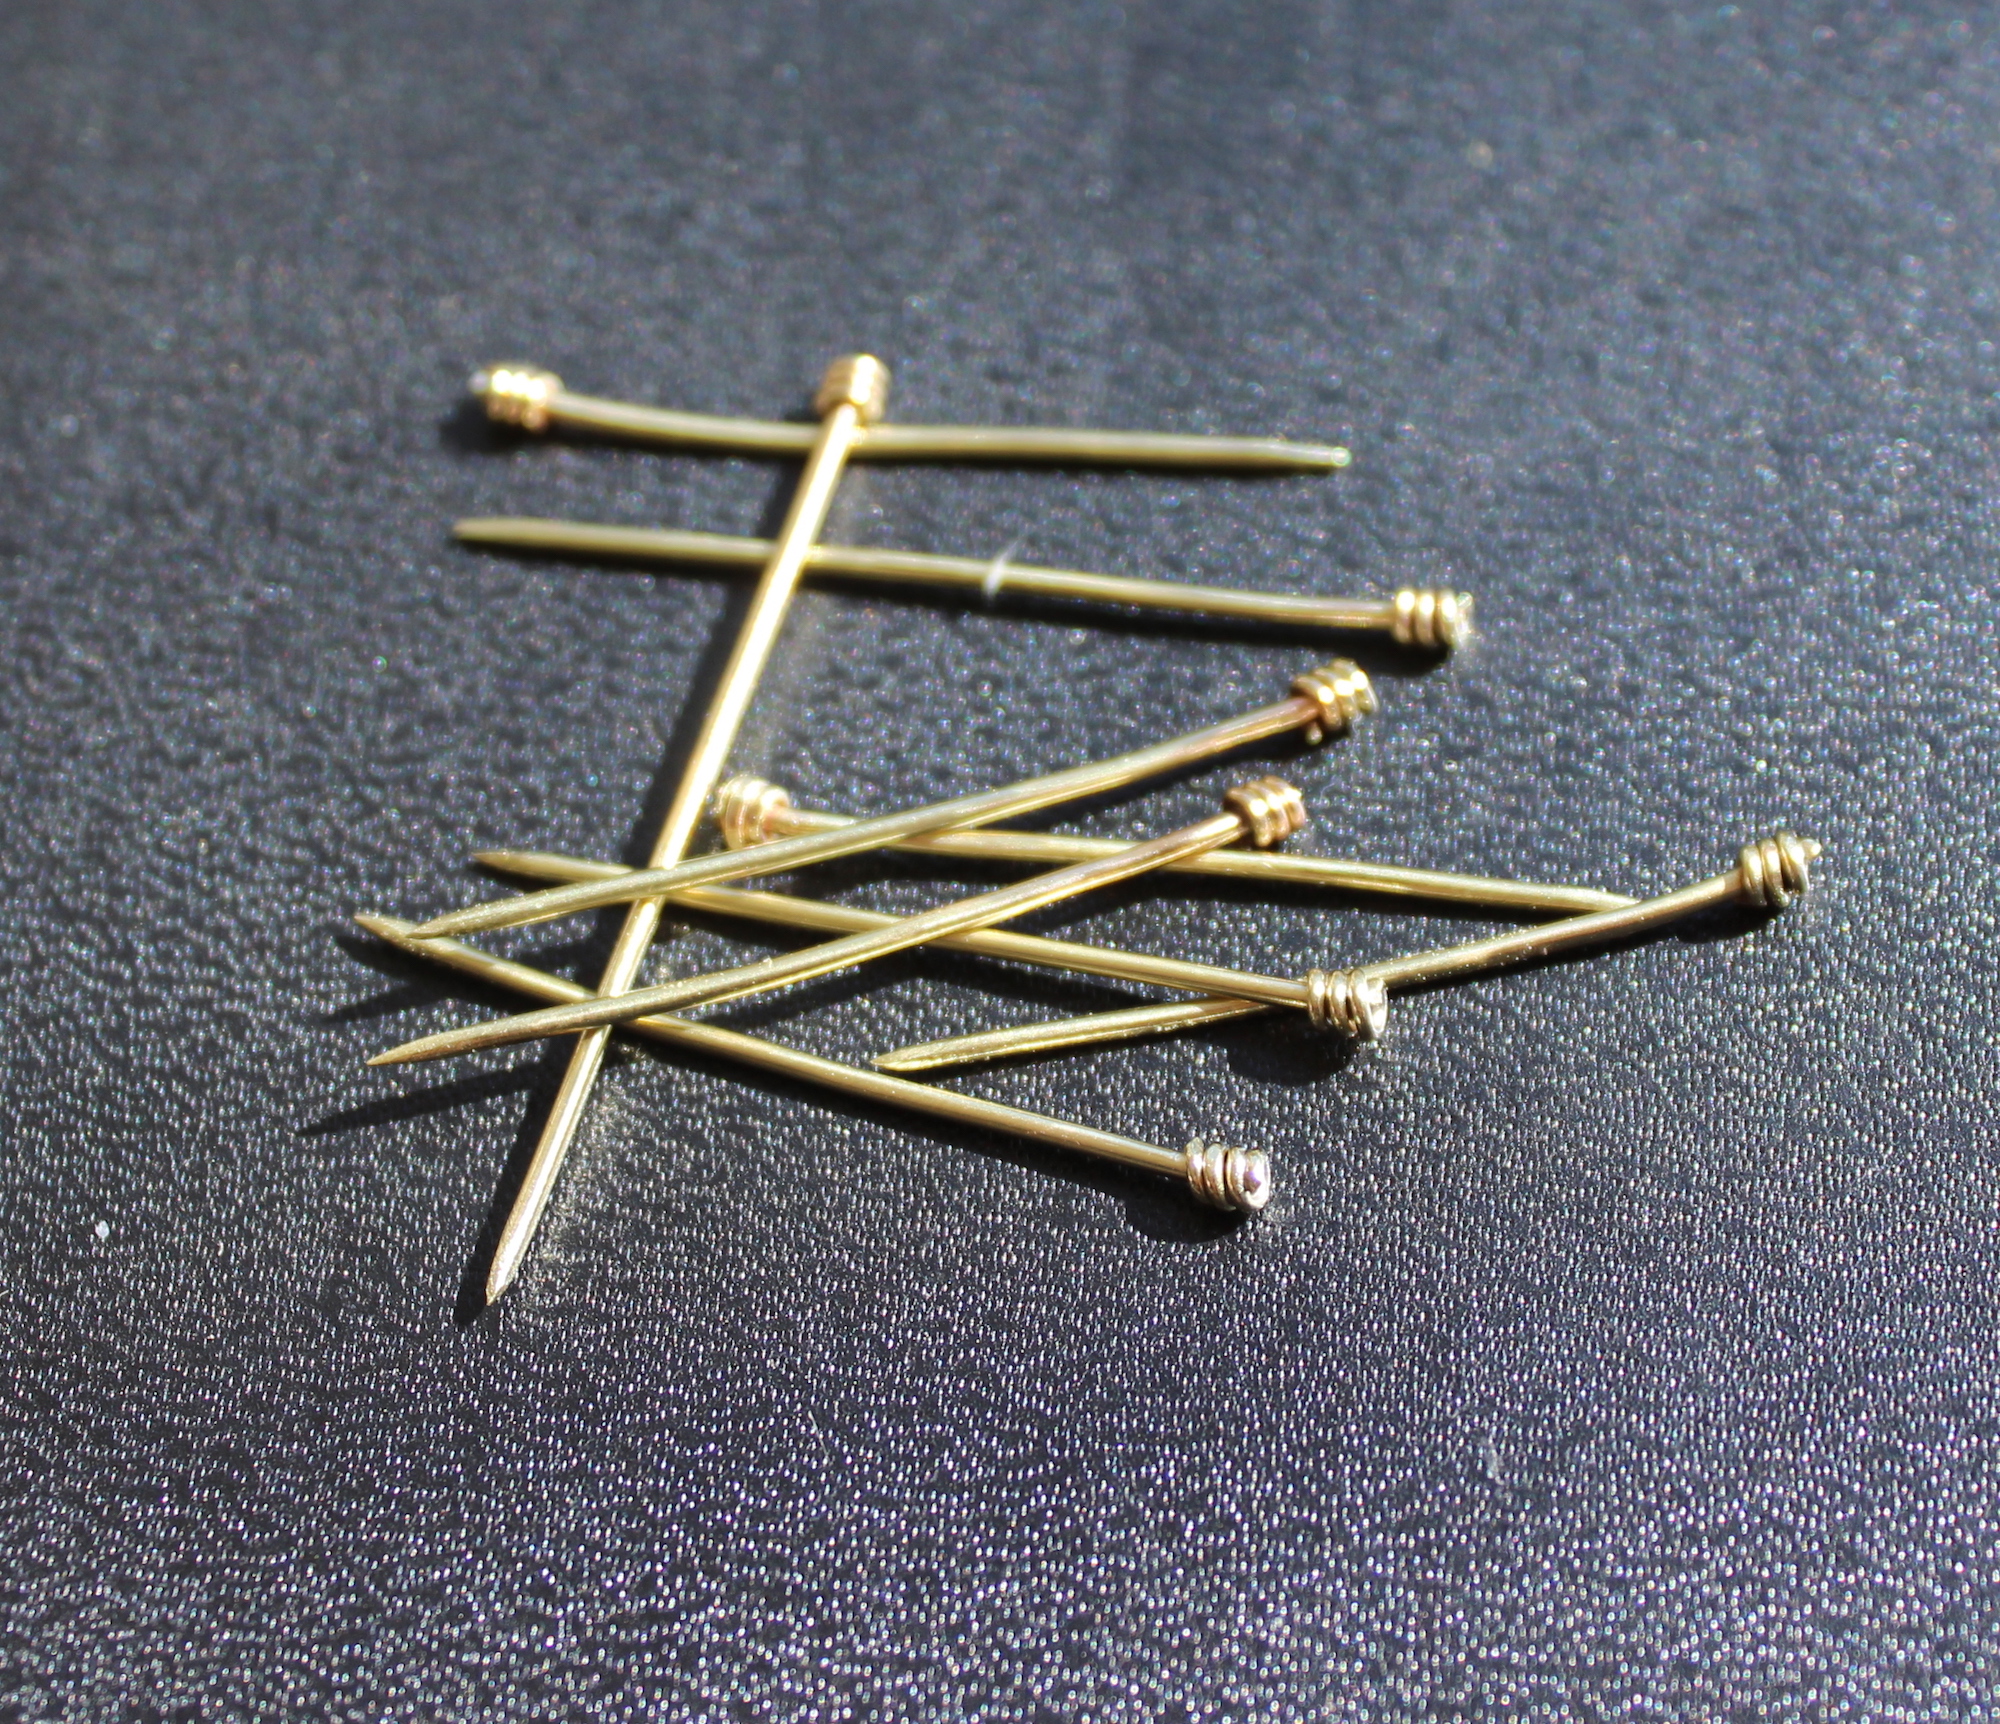 16th Century Brass Pins - Centuries-Sewing